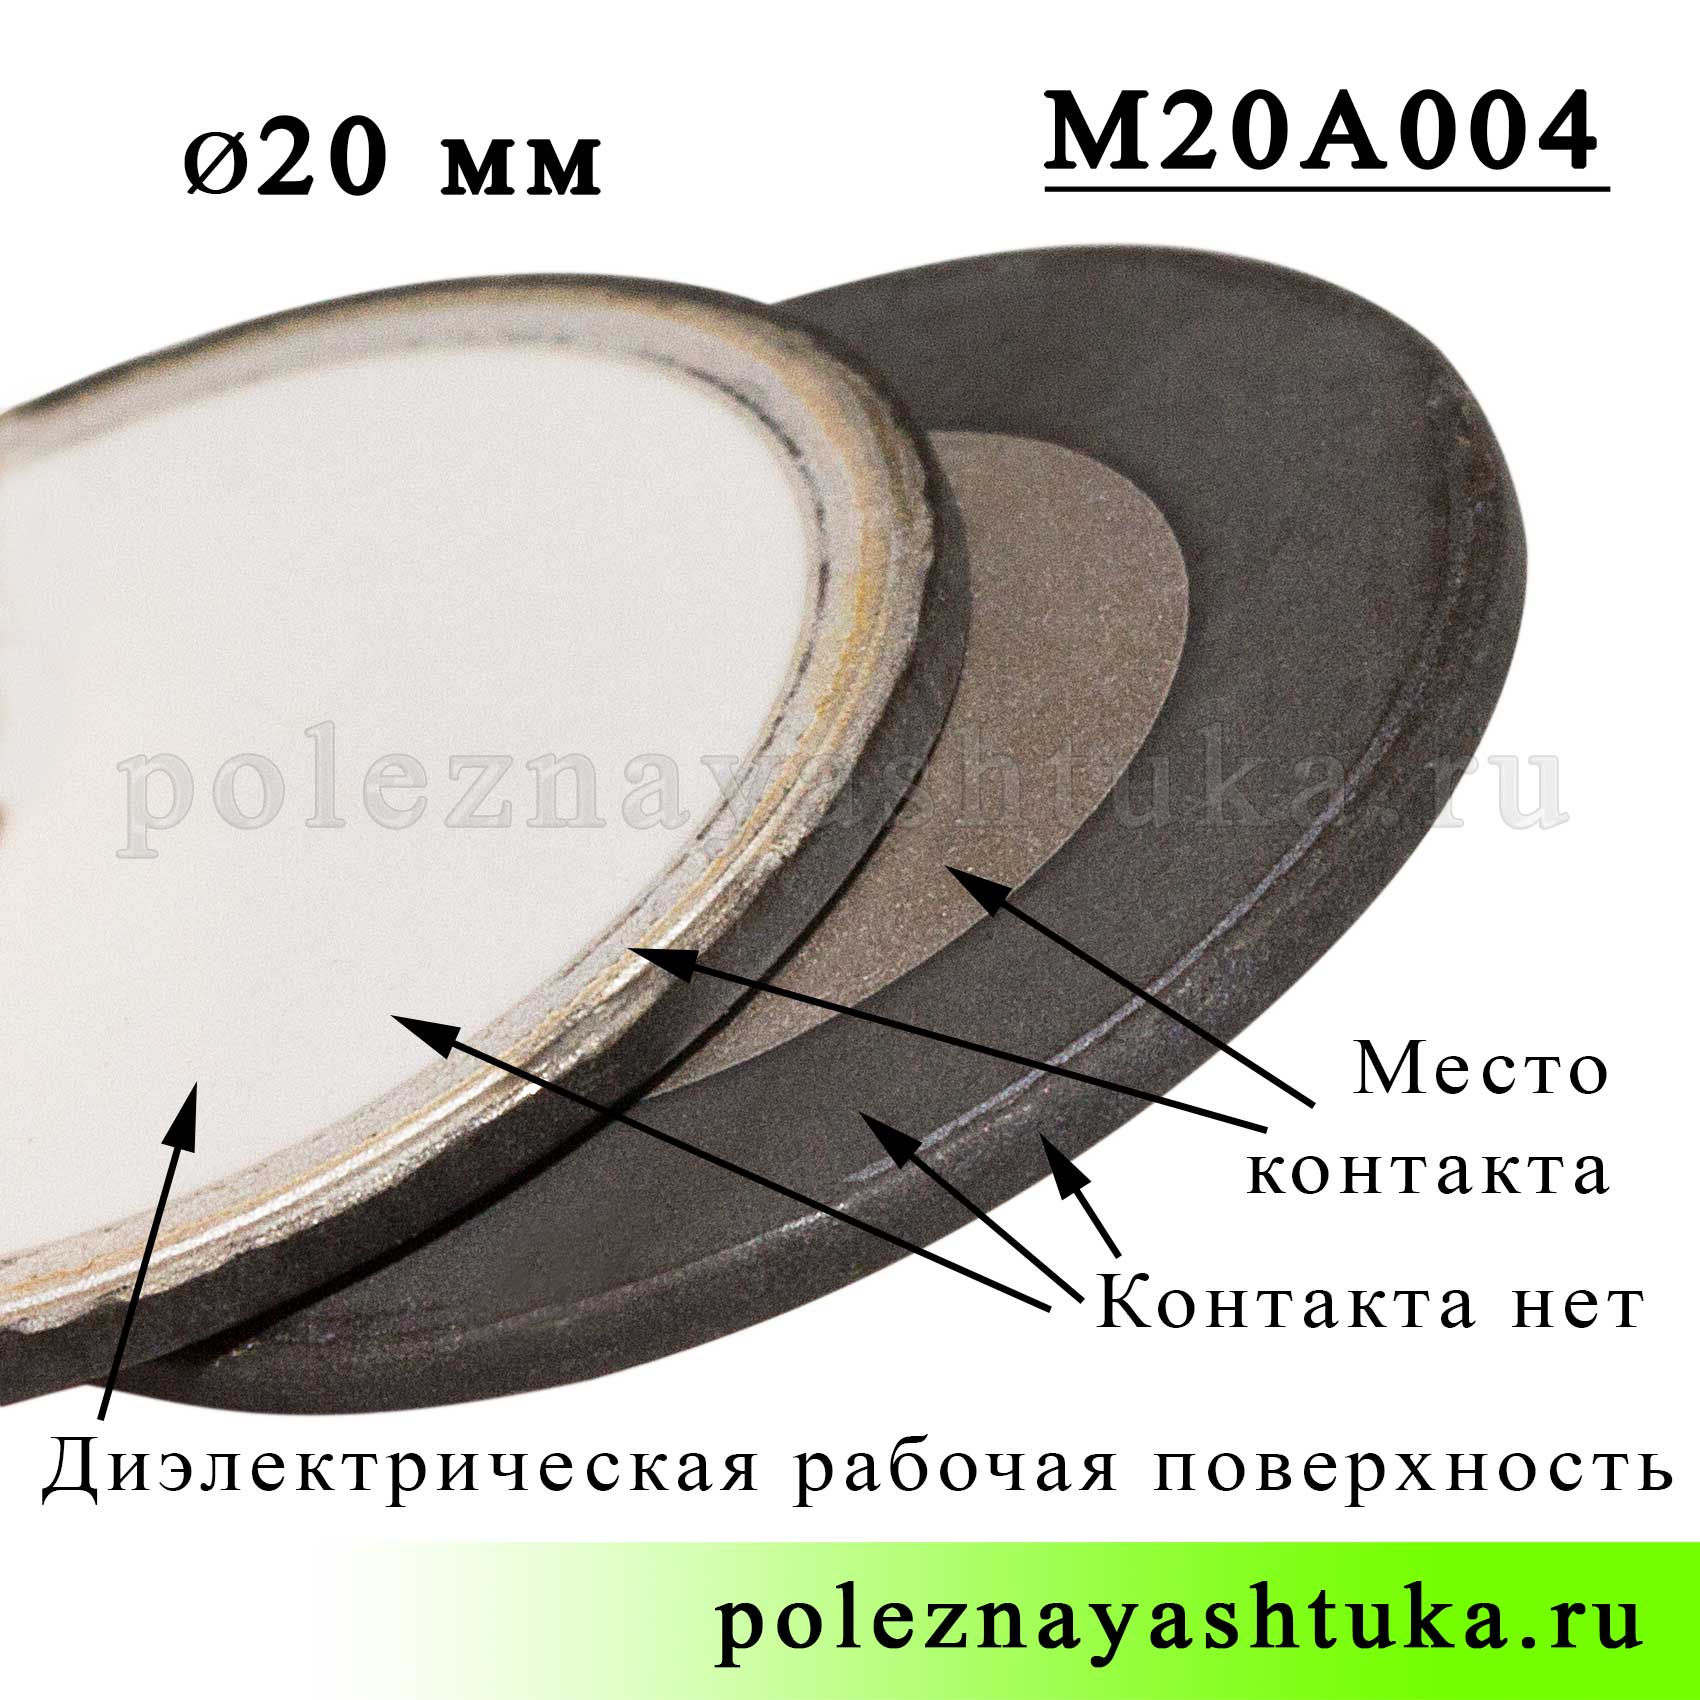 Ультразвуковая мембрана увлажнителя воздуха, 20 мм диаметр, беспроводная, фото